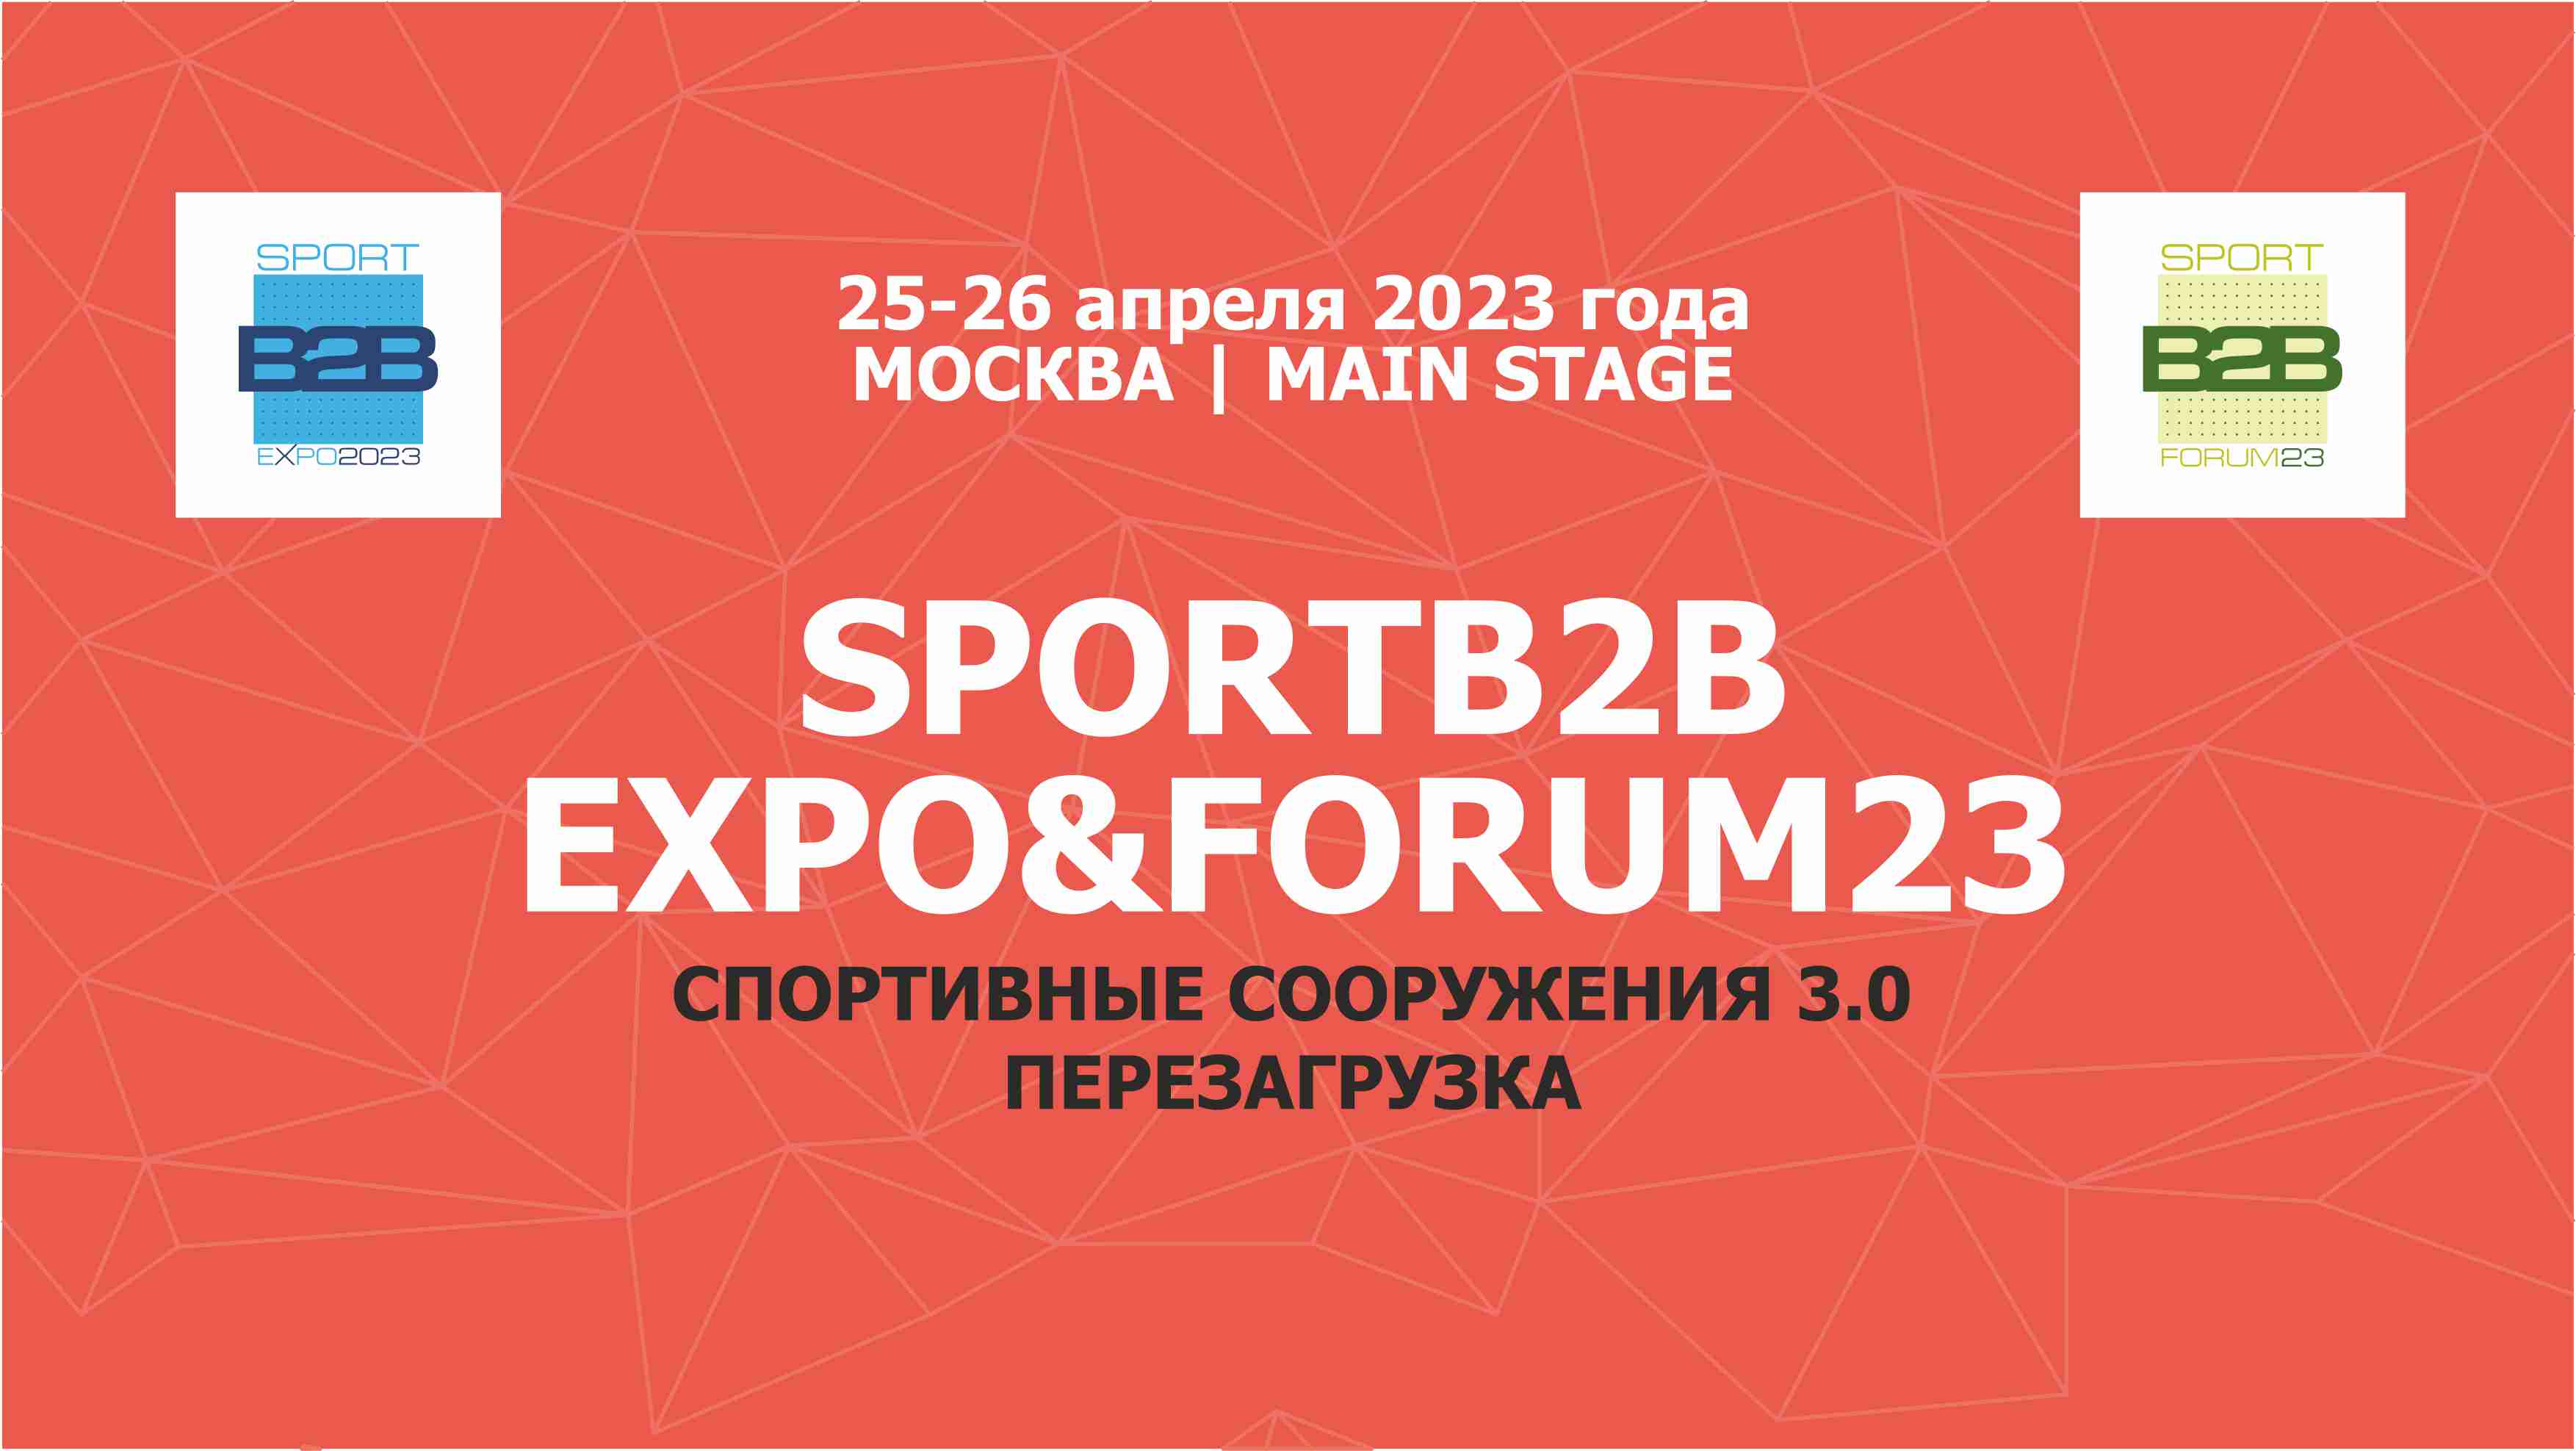 1010 2023 форум. Sportb2b Expo&forum. Sportb2b Expo forum 2023. Expo forum кофты.